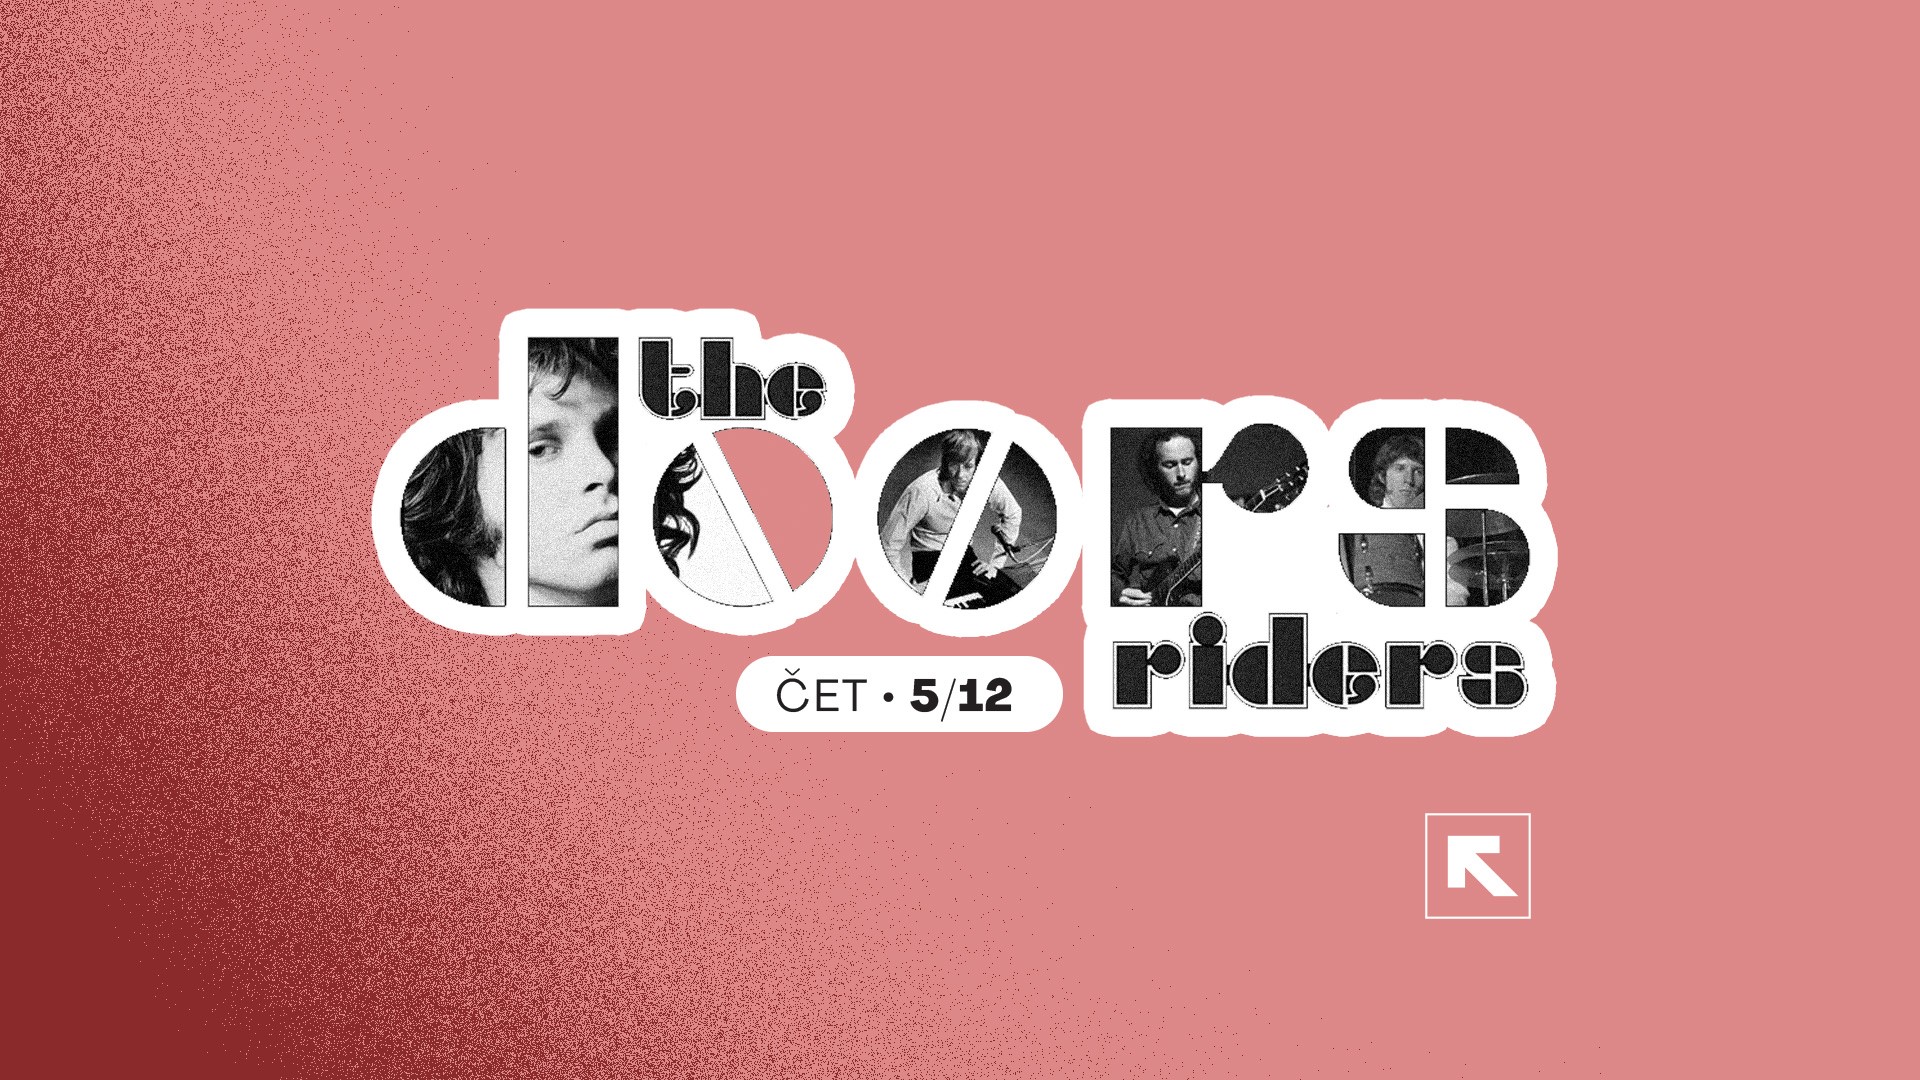 The Doors Riders - 05. Dec - Feedback